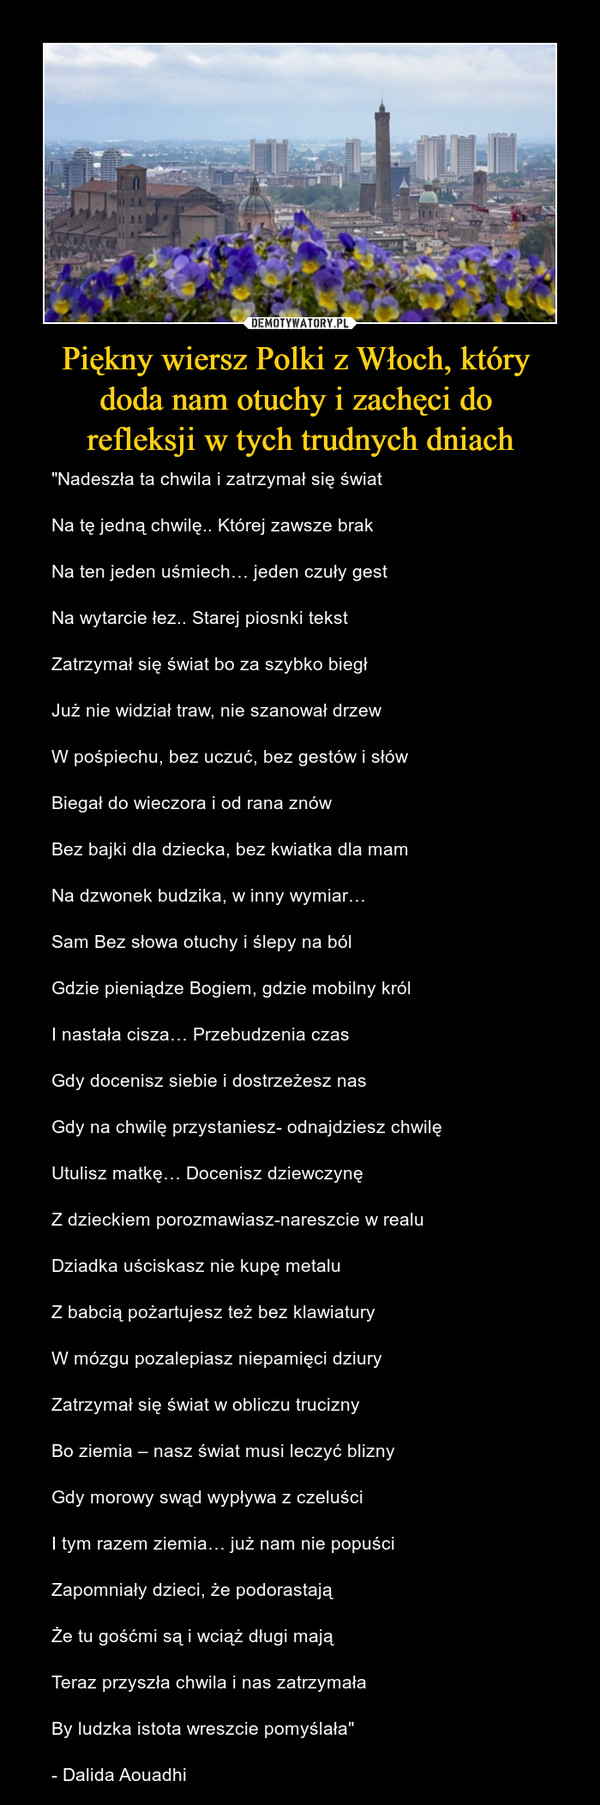 Piękny wiersz Polki z Włoch, który 
doda nam otuchy i zachęci do 
refleksji w tych trudnych dniach